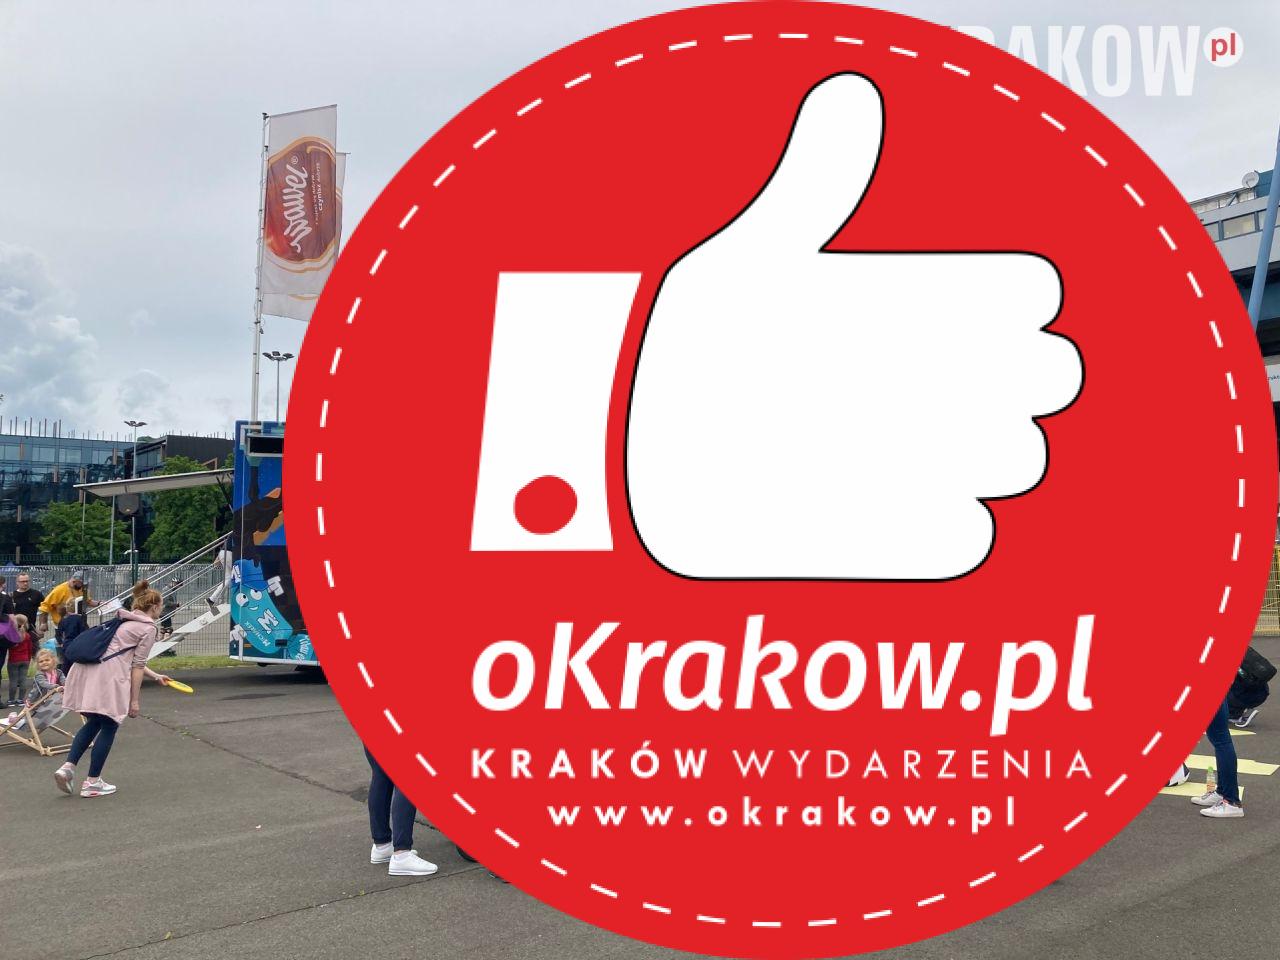 Wawel Truck Krakow 1 - Słodki Wawel Truck podbił serca mieszkańców Krakowa!